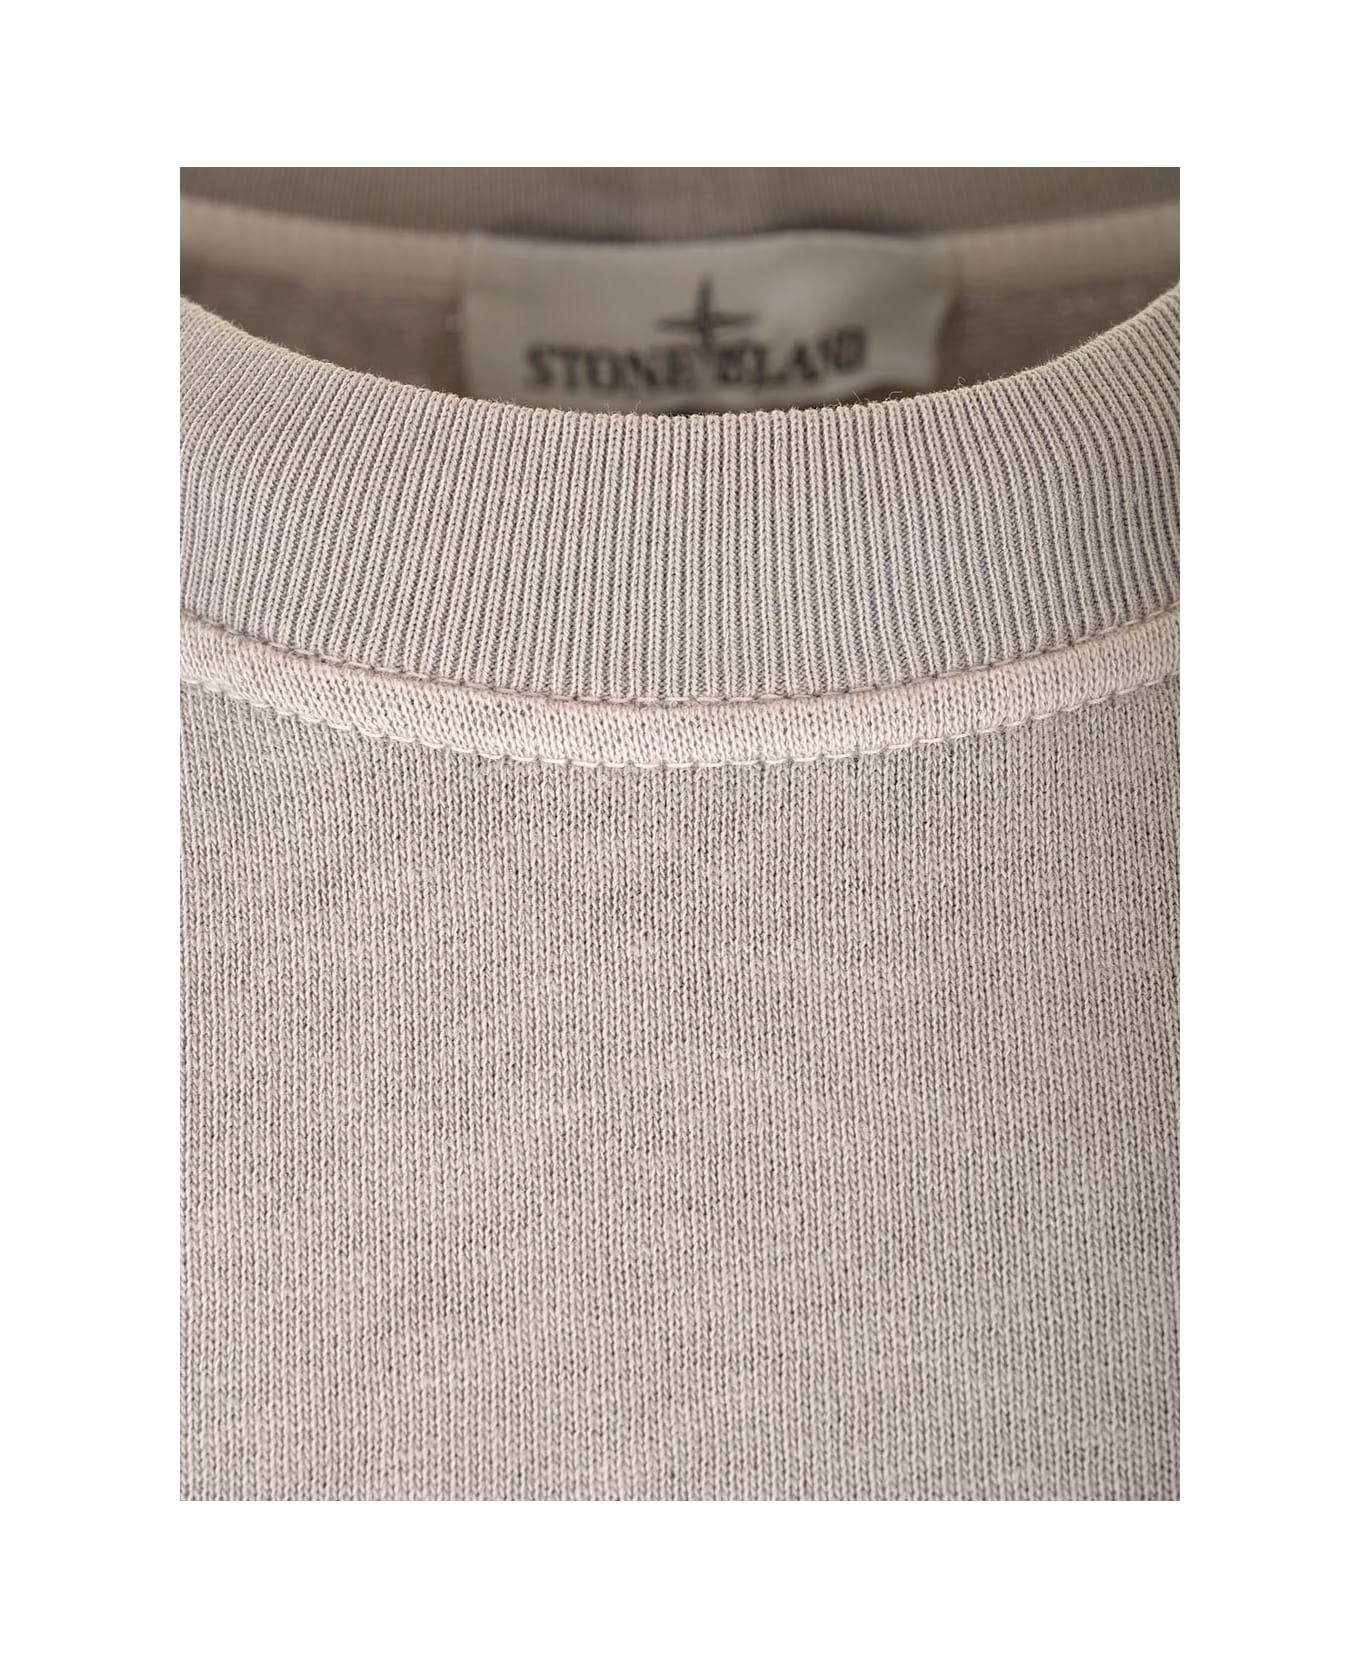 Stone Island Grey Sweatshirt With Mock Neck - Dust